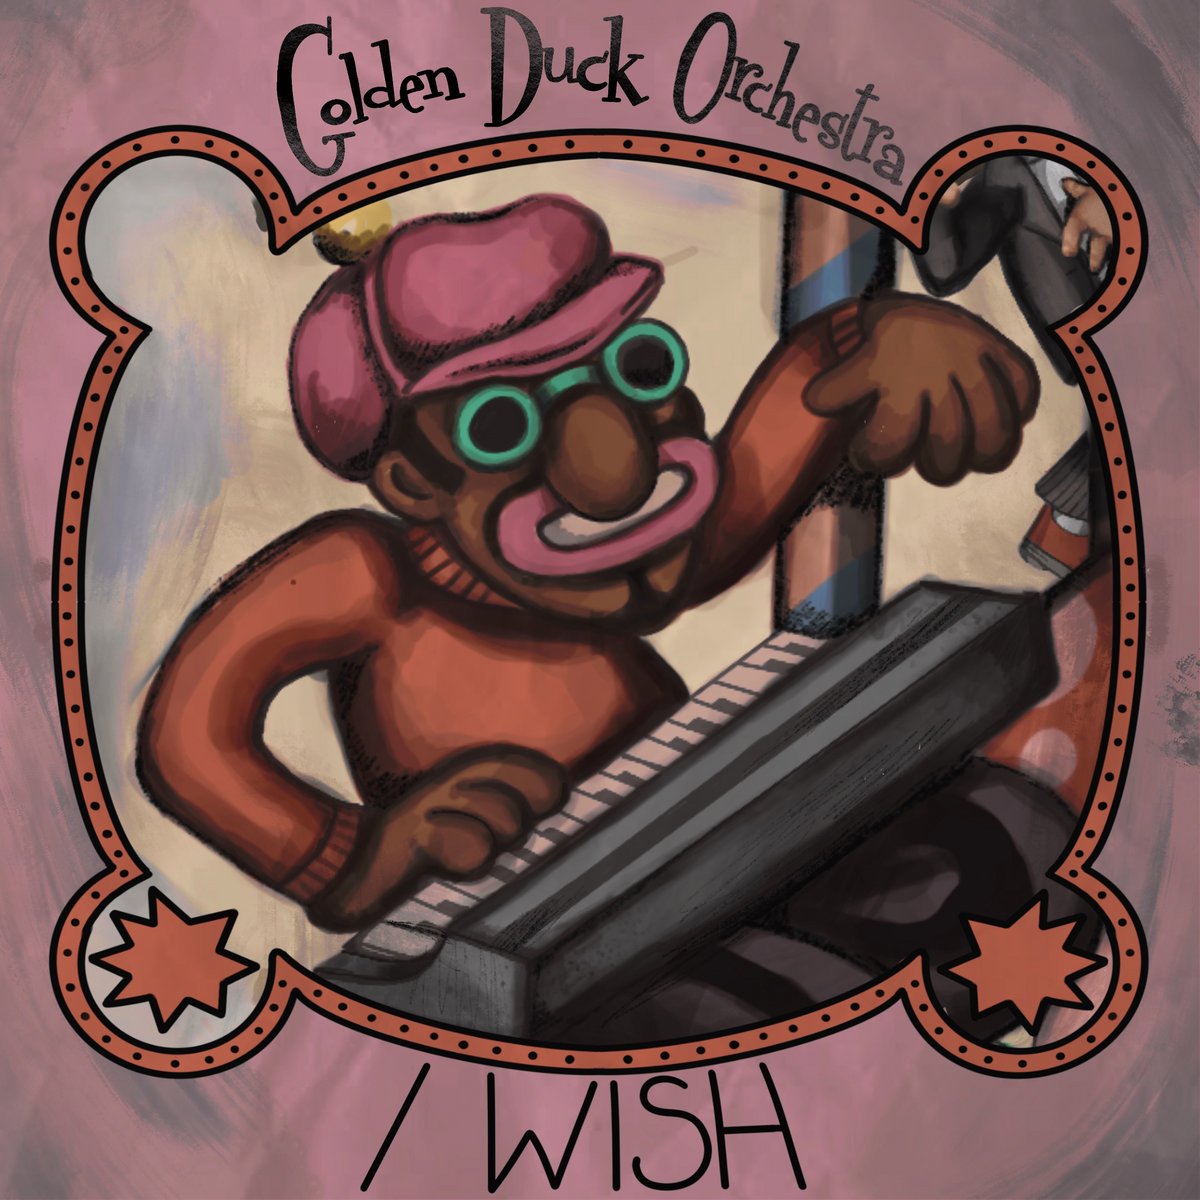 LISTEN: “I Wish” by Golden Duck Orchestra